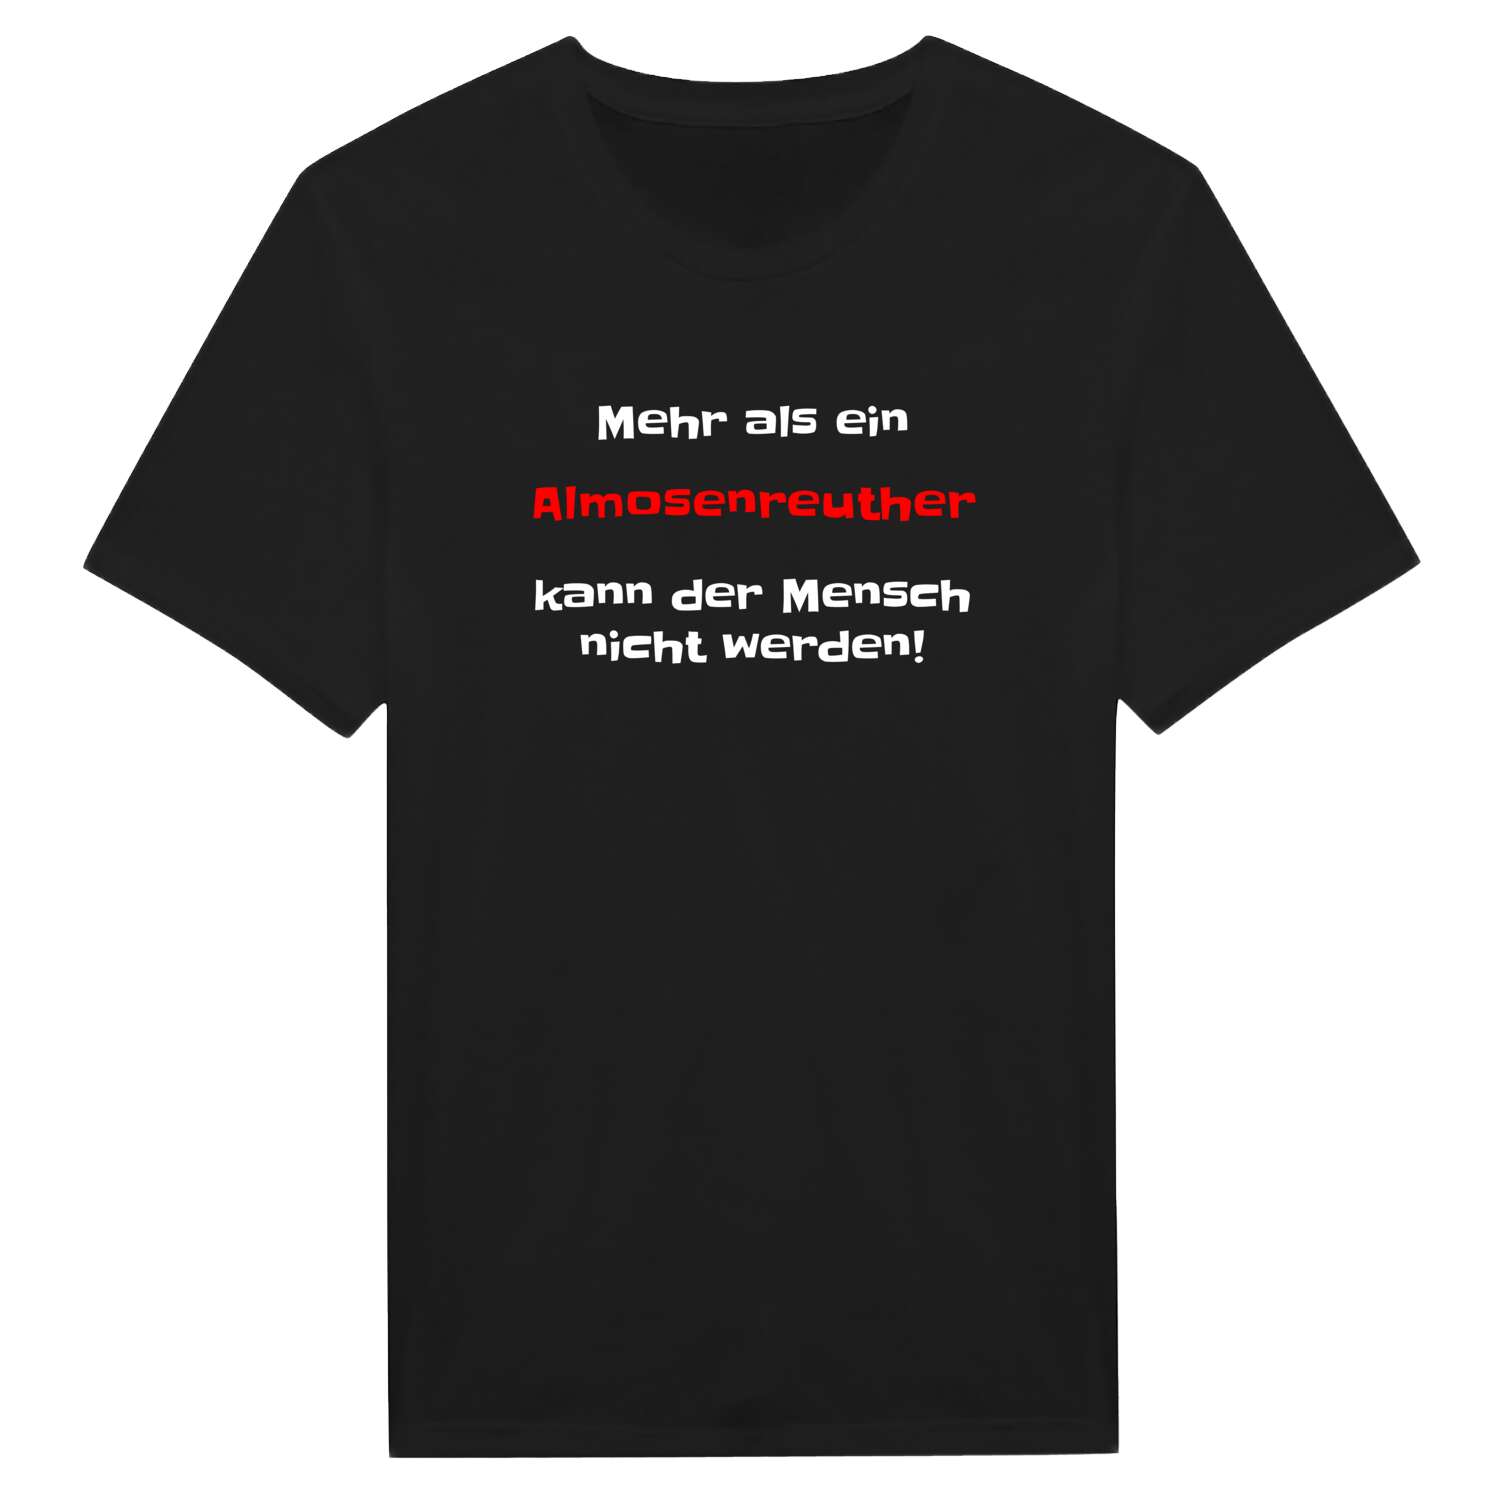 Almosenreuth T-Shirt »Mehr als ein«